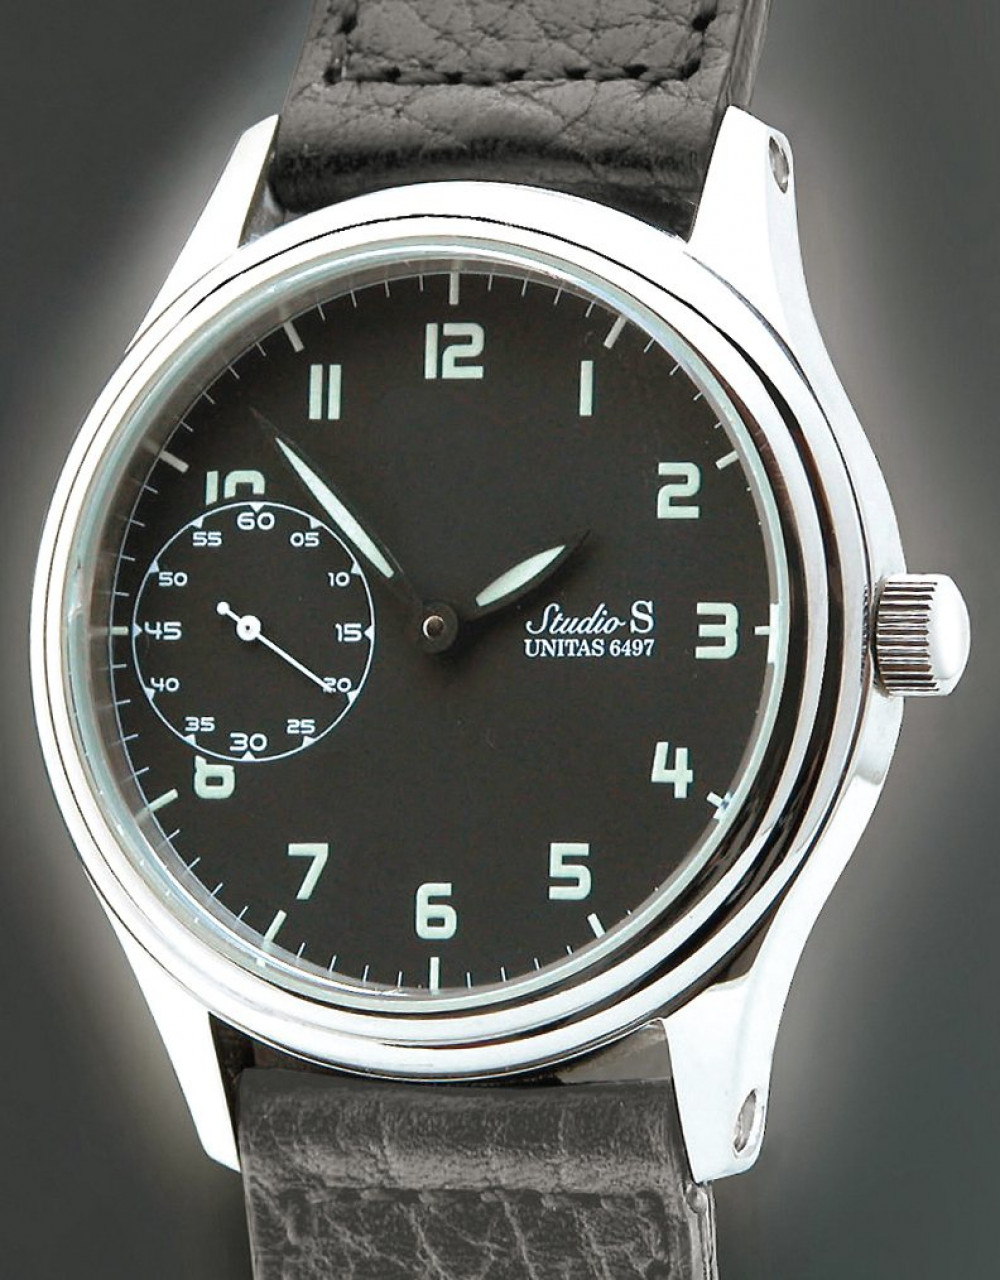 Zegarek firmy Studio - S, model S - 2